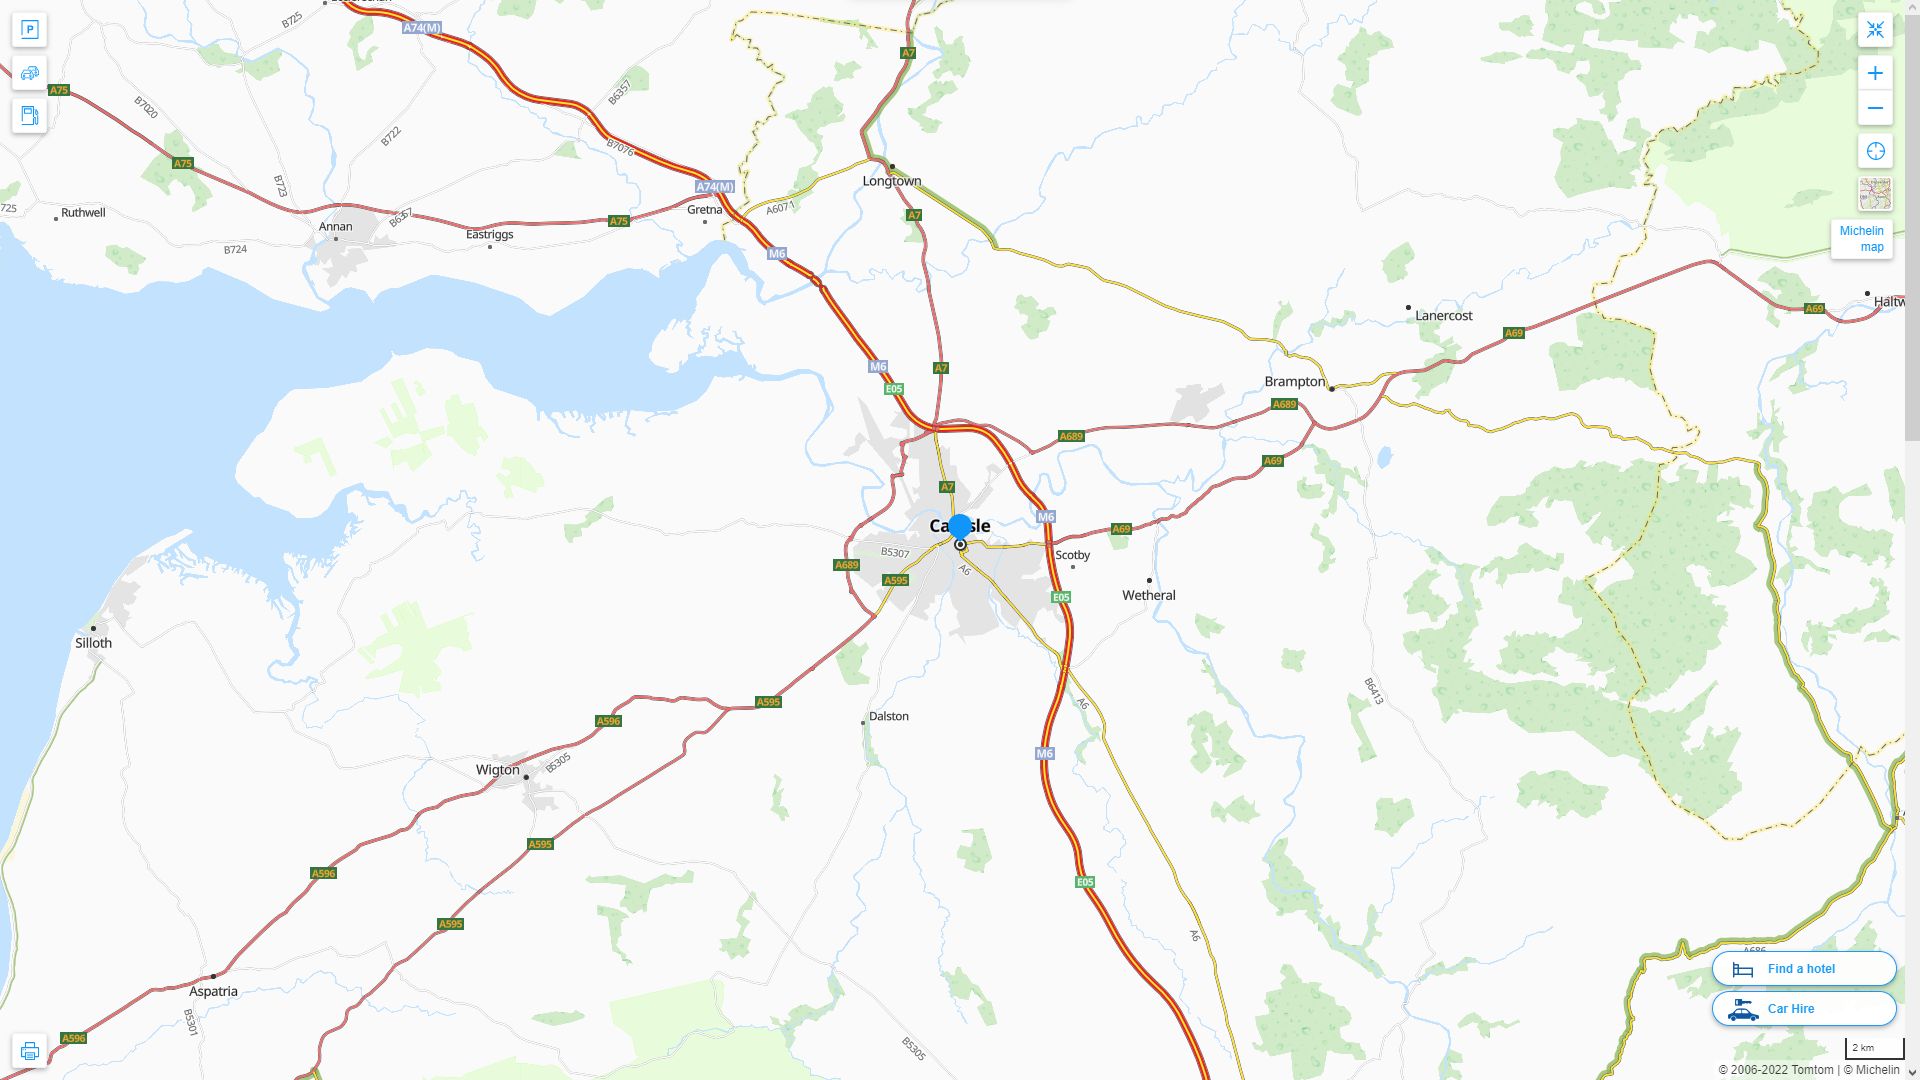 Carlisle Royaume Uni Autoroute et carte routiere